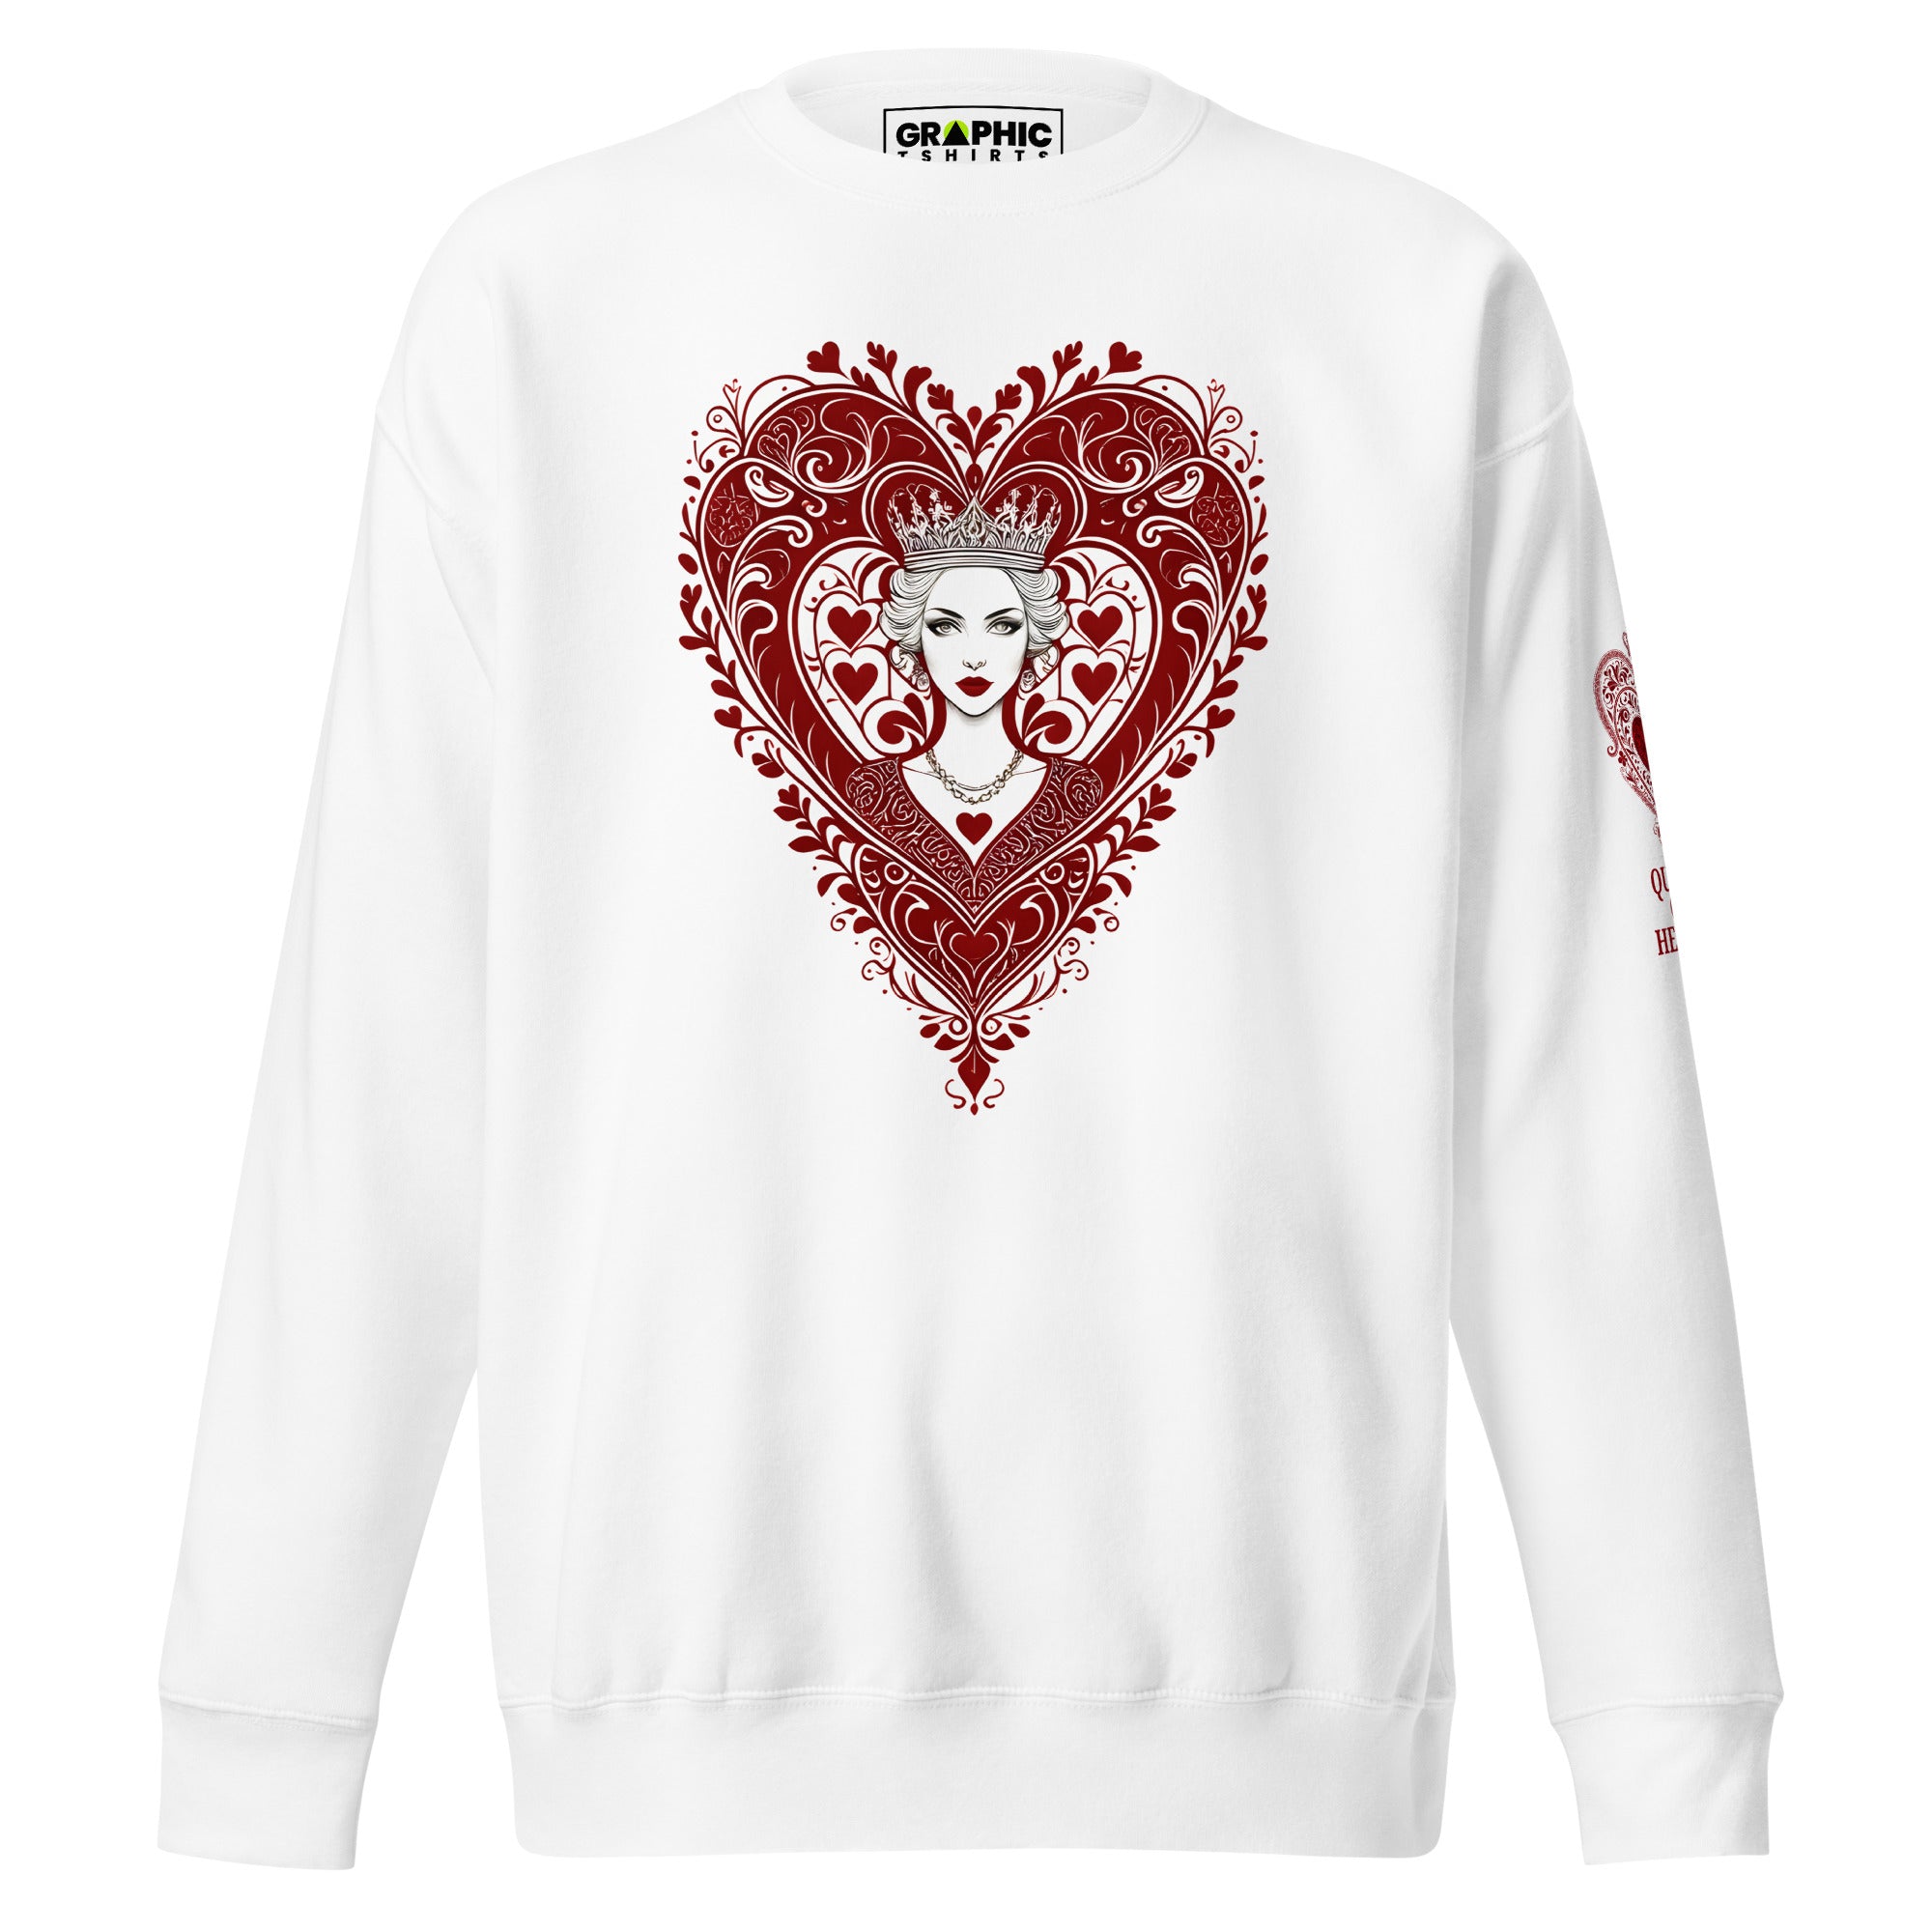 Unisex Premium Sweatshirt - Queen Of Hearts Series v.1